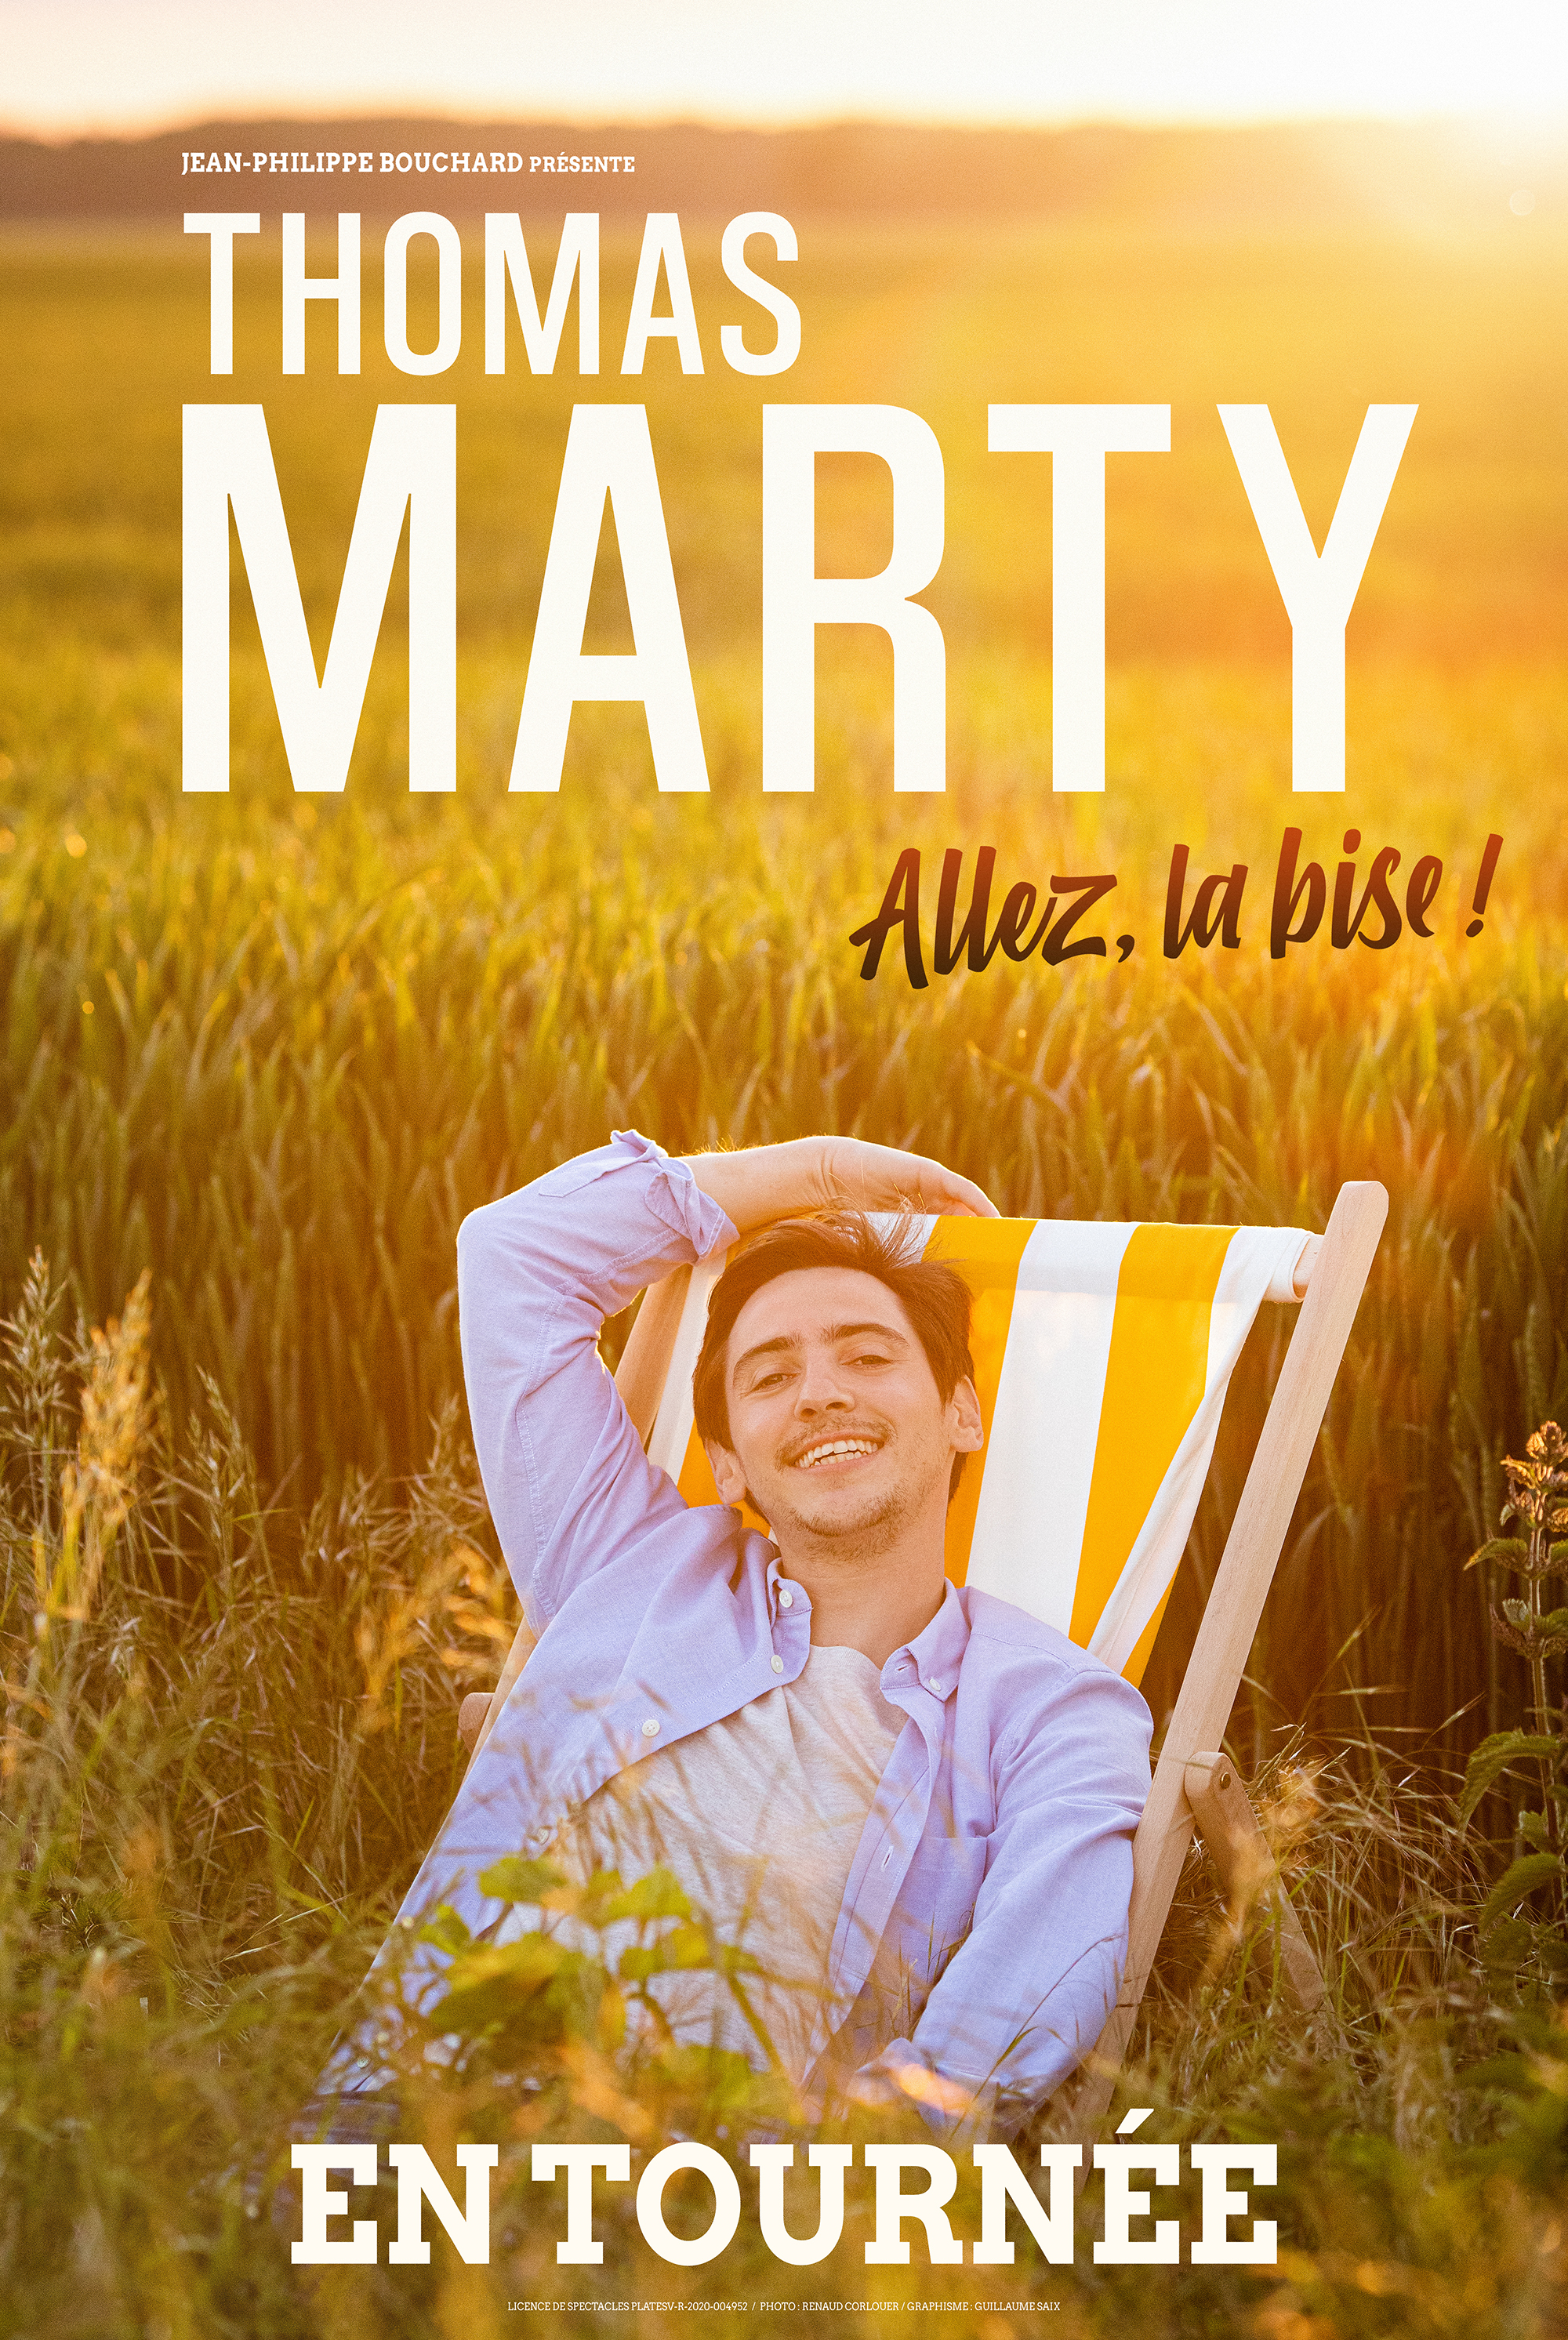 MARTY - Allez la bise - Affiche en tournée HD ©Guillaume Saix